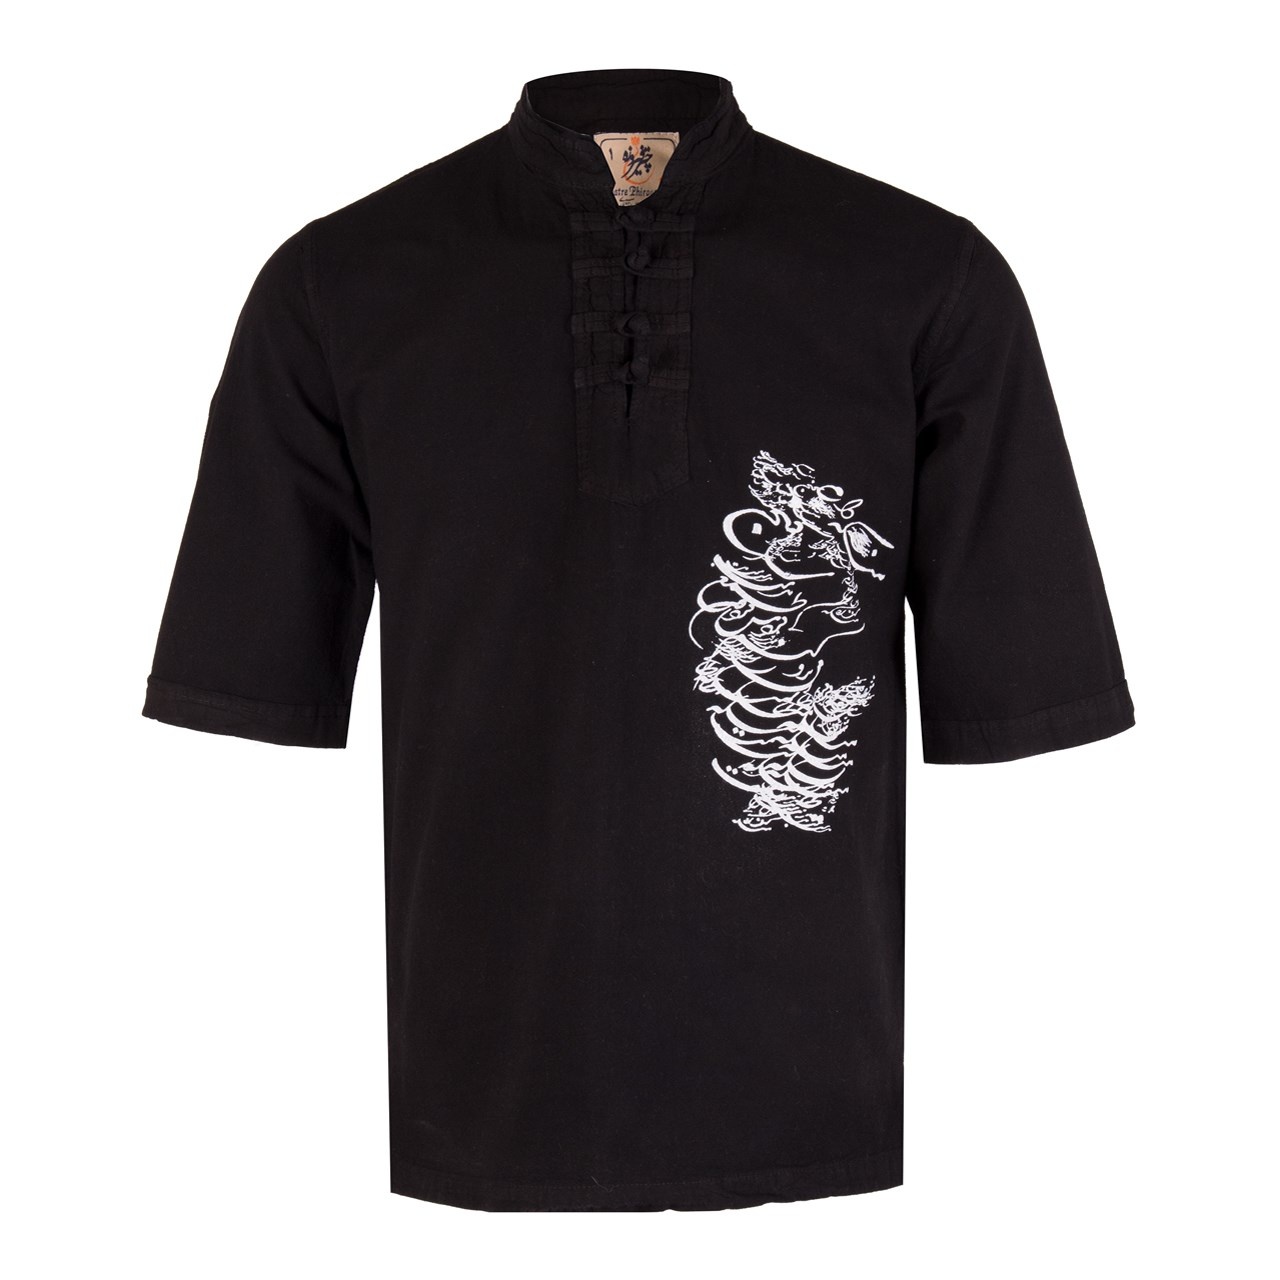 پیراهن مردانه الیاف طبیعی چترفیروزه مدل آستین کوتاه چاپی چهارگره مشکی کد 2